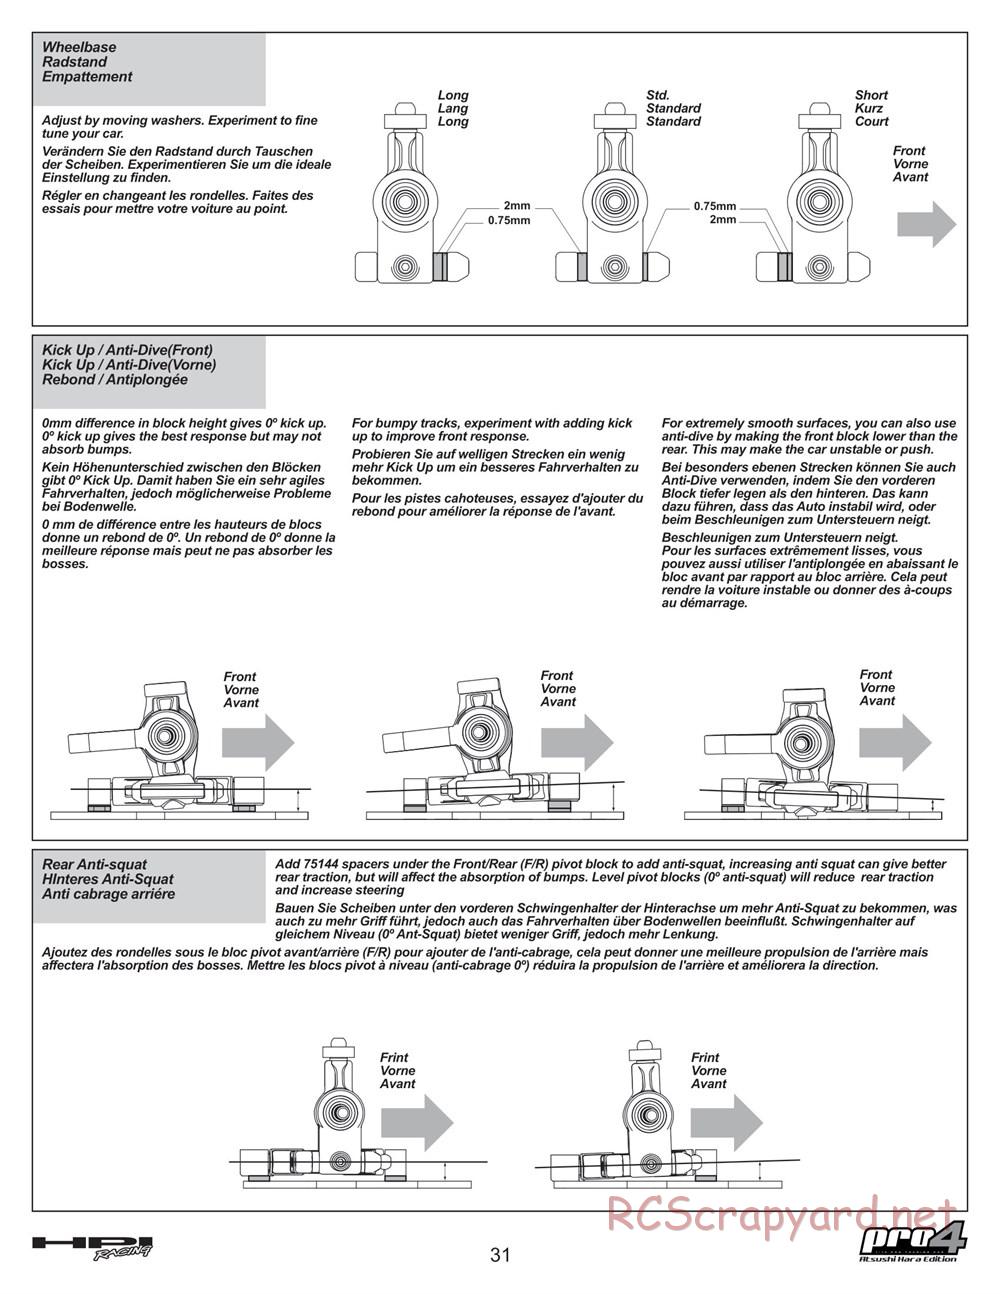 HPI - Pro4 Hara Edition - Manual - Page 31